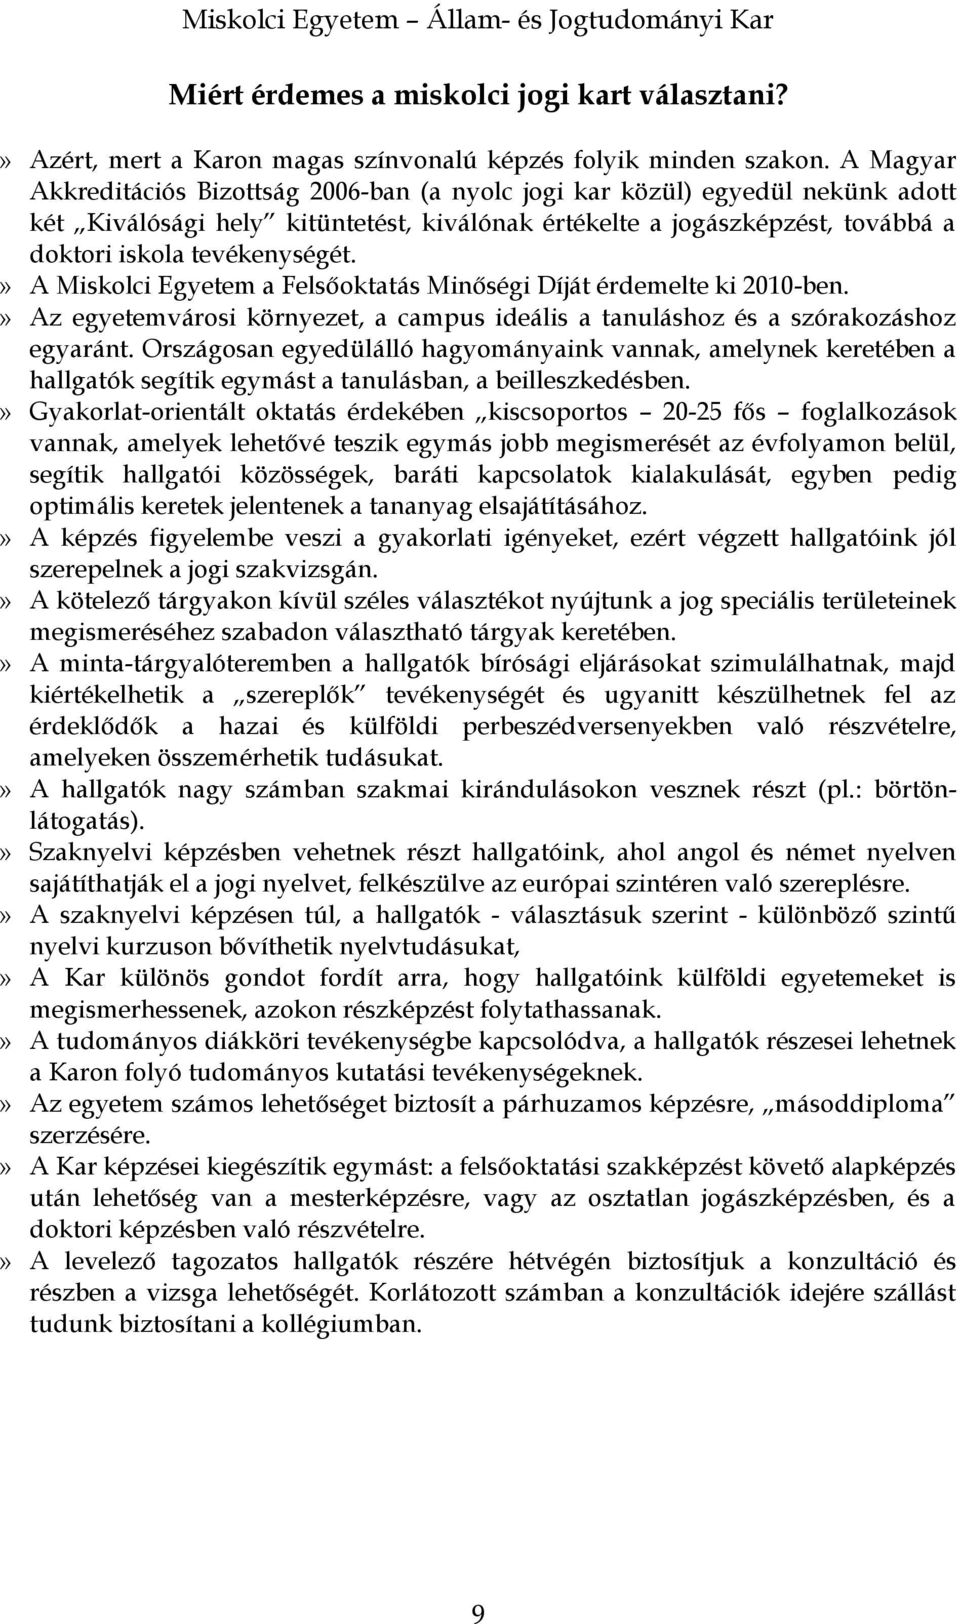 Miskolci Egyetem. Állam- és Jogtudományi Kar - PDF Ingyenes letöltés